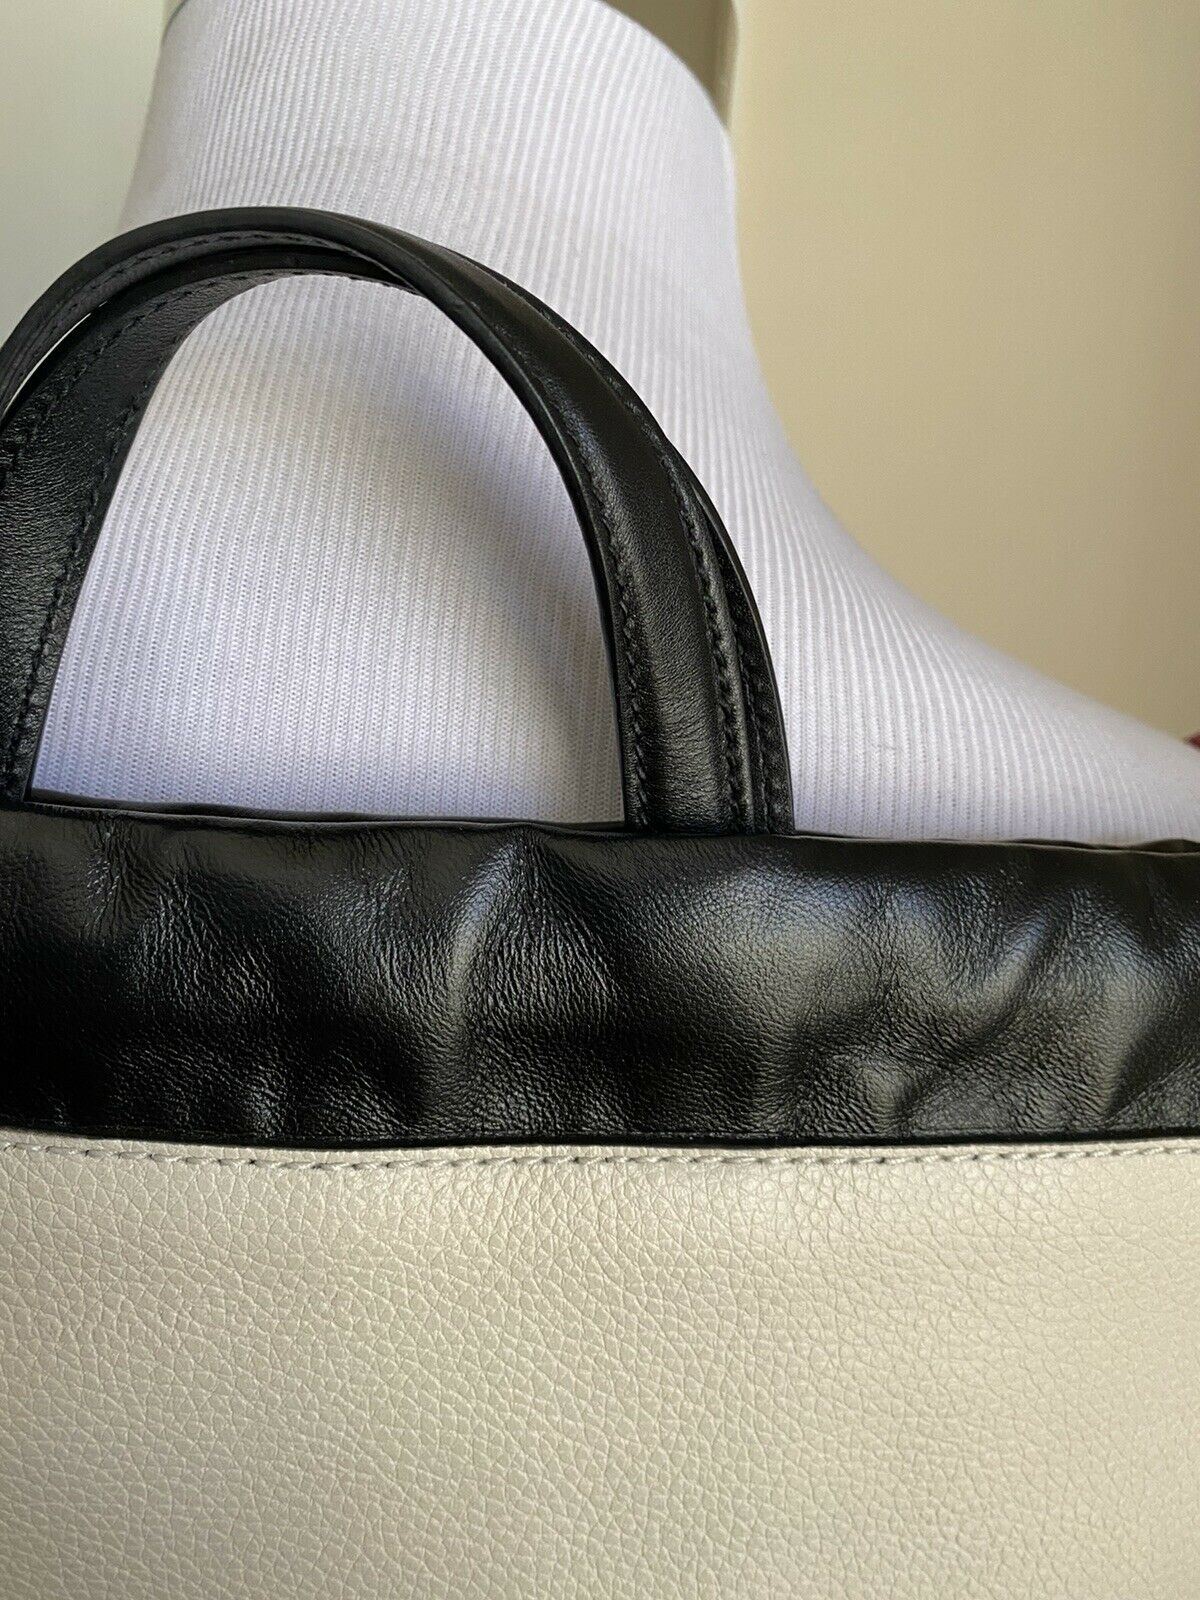 New Кожаный Рюкзак Gucci GG Monogram Желто-коричневый/Черный 523586 Италия